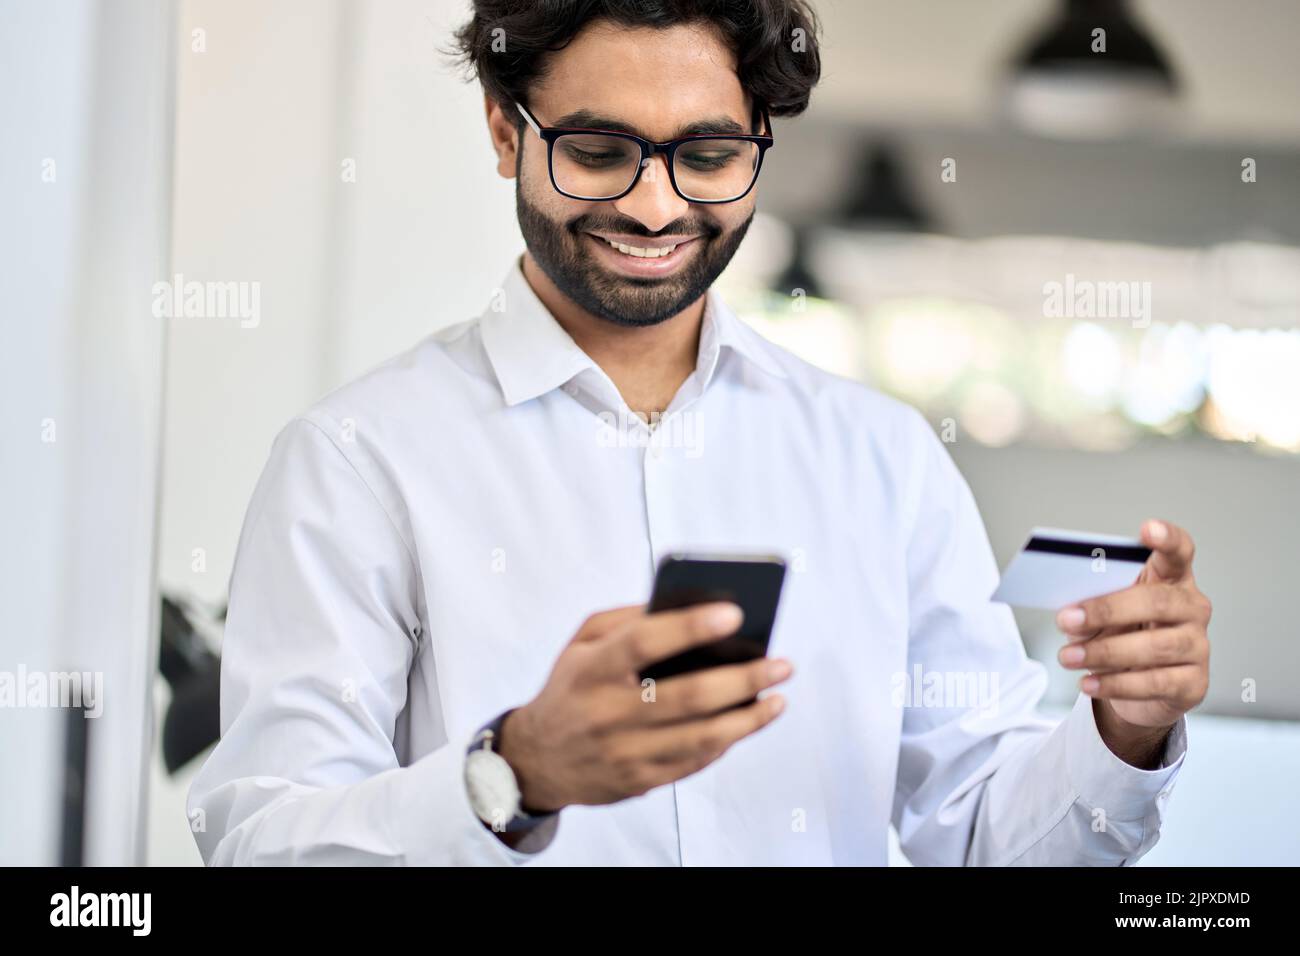 Glücklicher indischer Geschäftsmann, der Telefon und Kreditkarte mit der mobilen Bank-App hält. Stockfoto